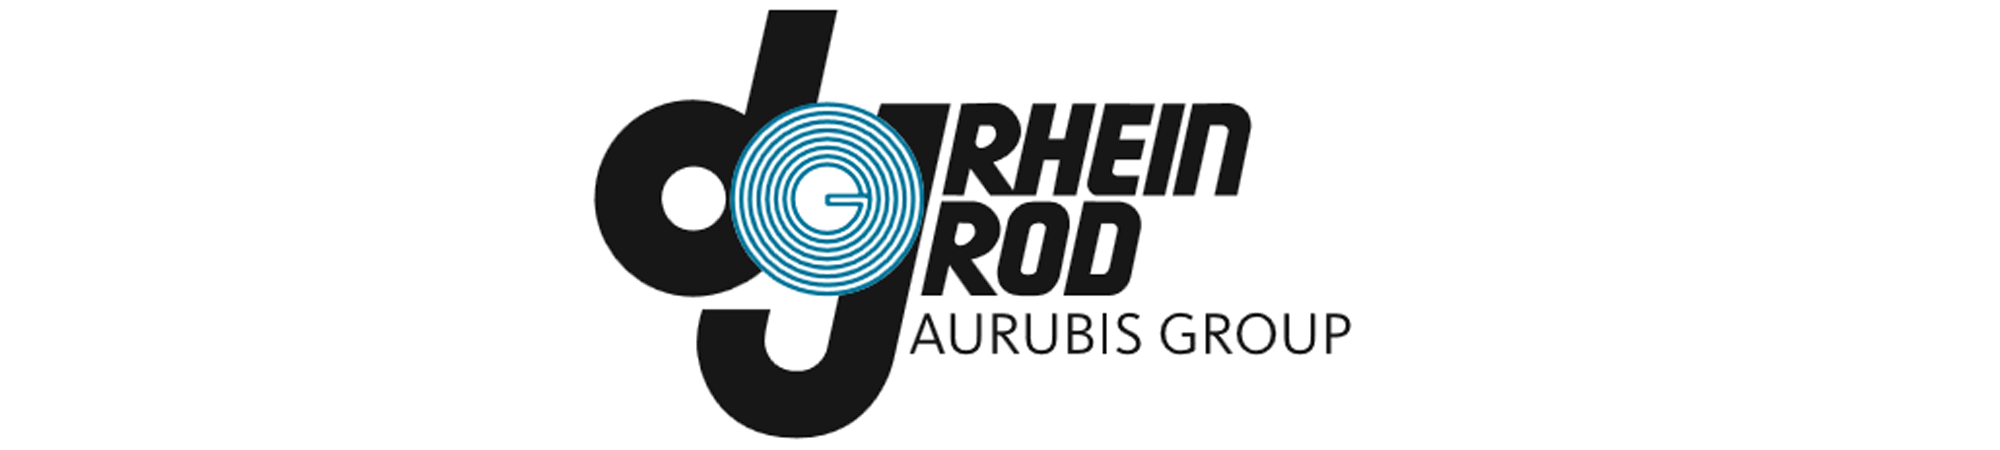 Rhein_Rod_logo